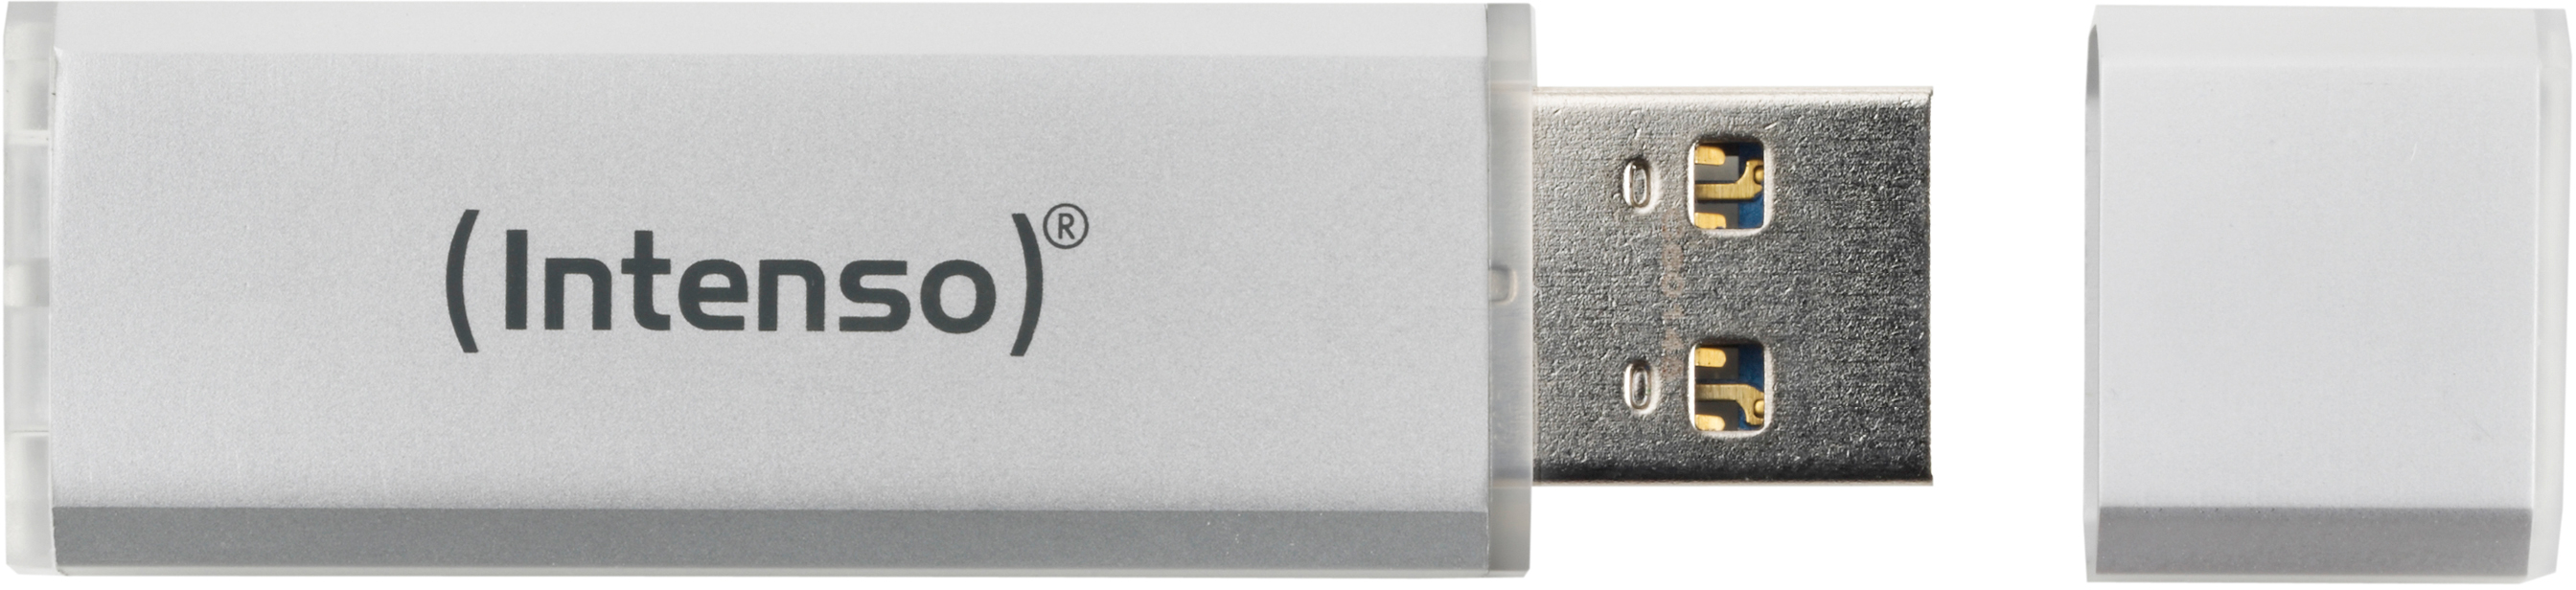 INTENSO USB Stick Ultra Line 16 GB 3531470 USB 3.0